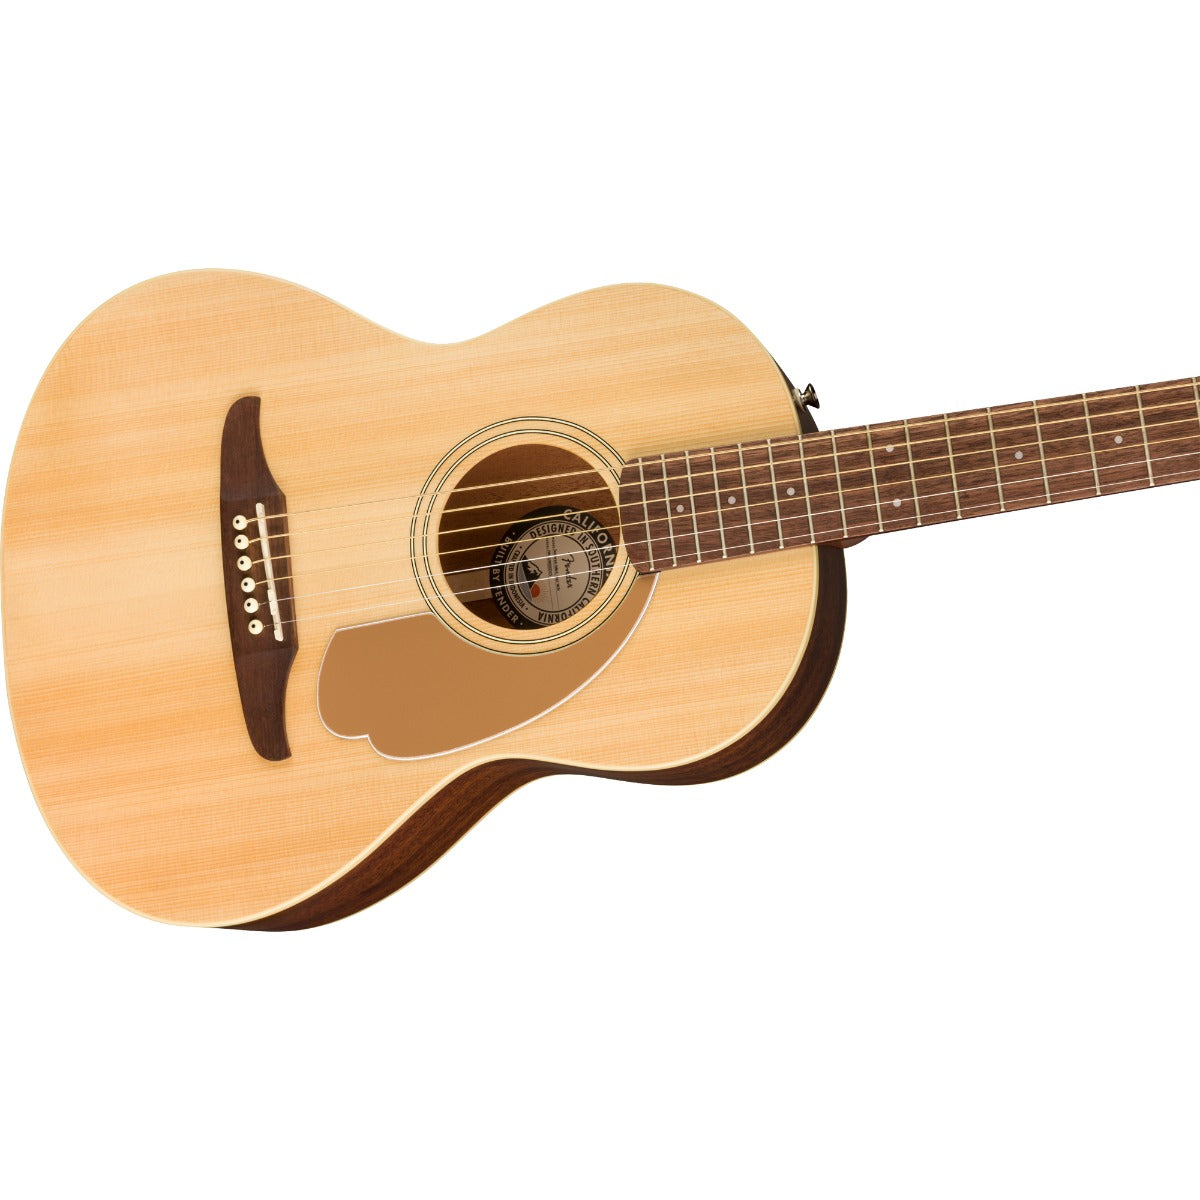 Fender Sonoran Mini Acoustic Guitar with Bag - Natural